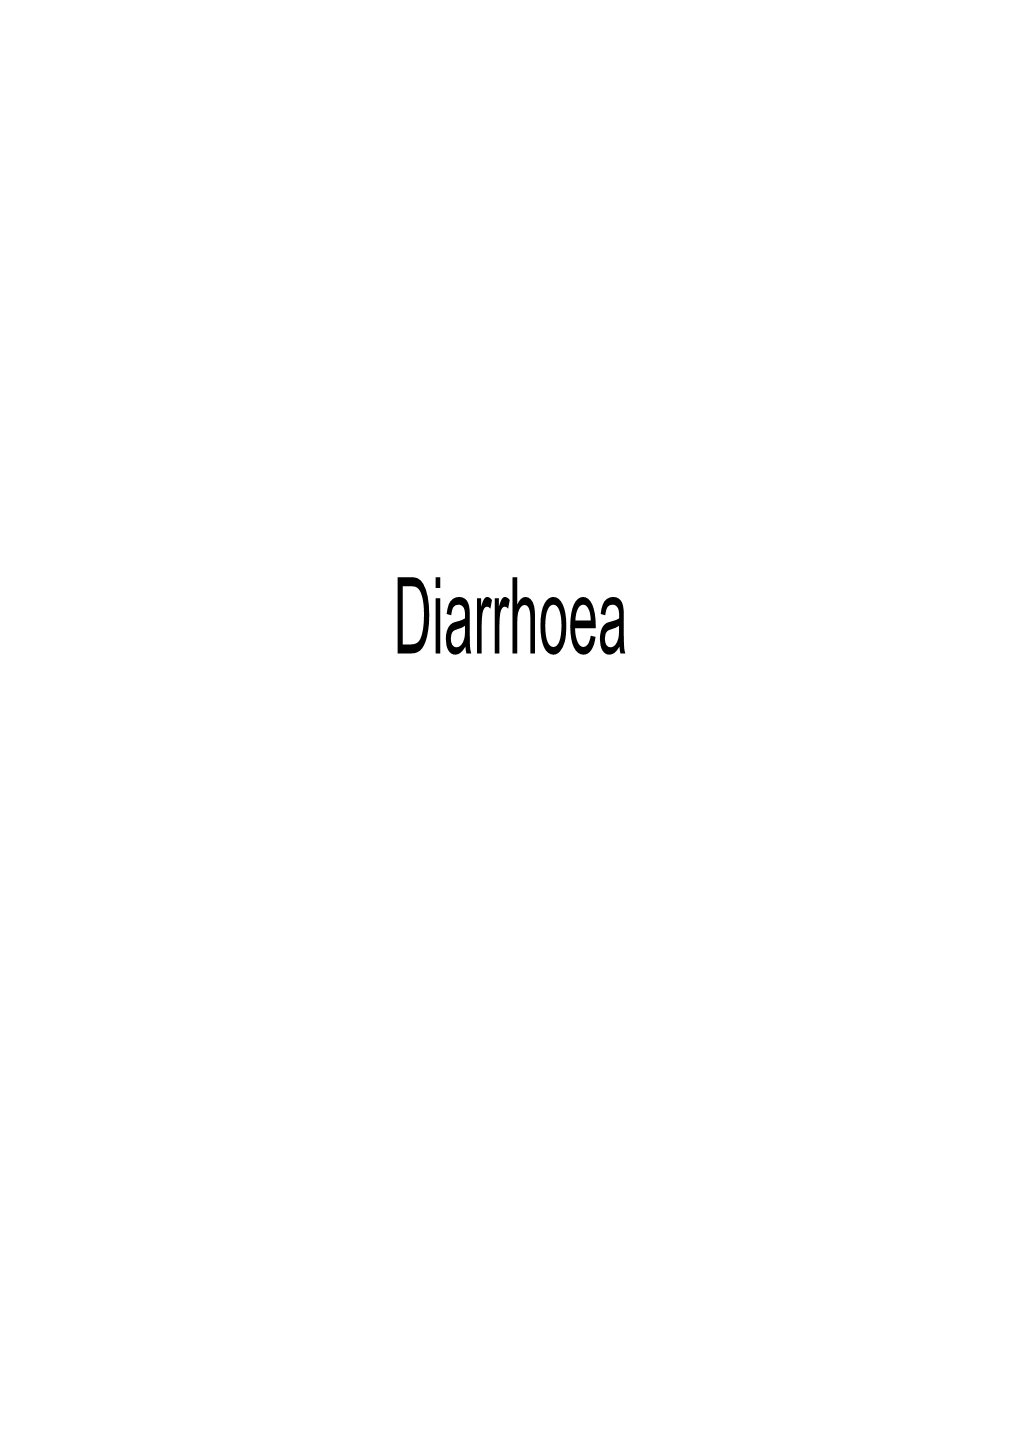 Diarrhoea Definition